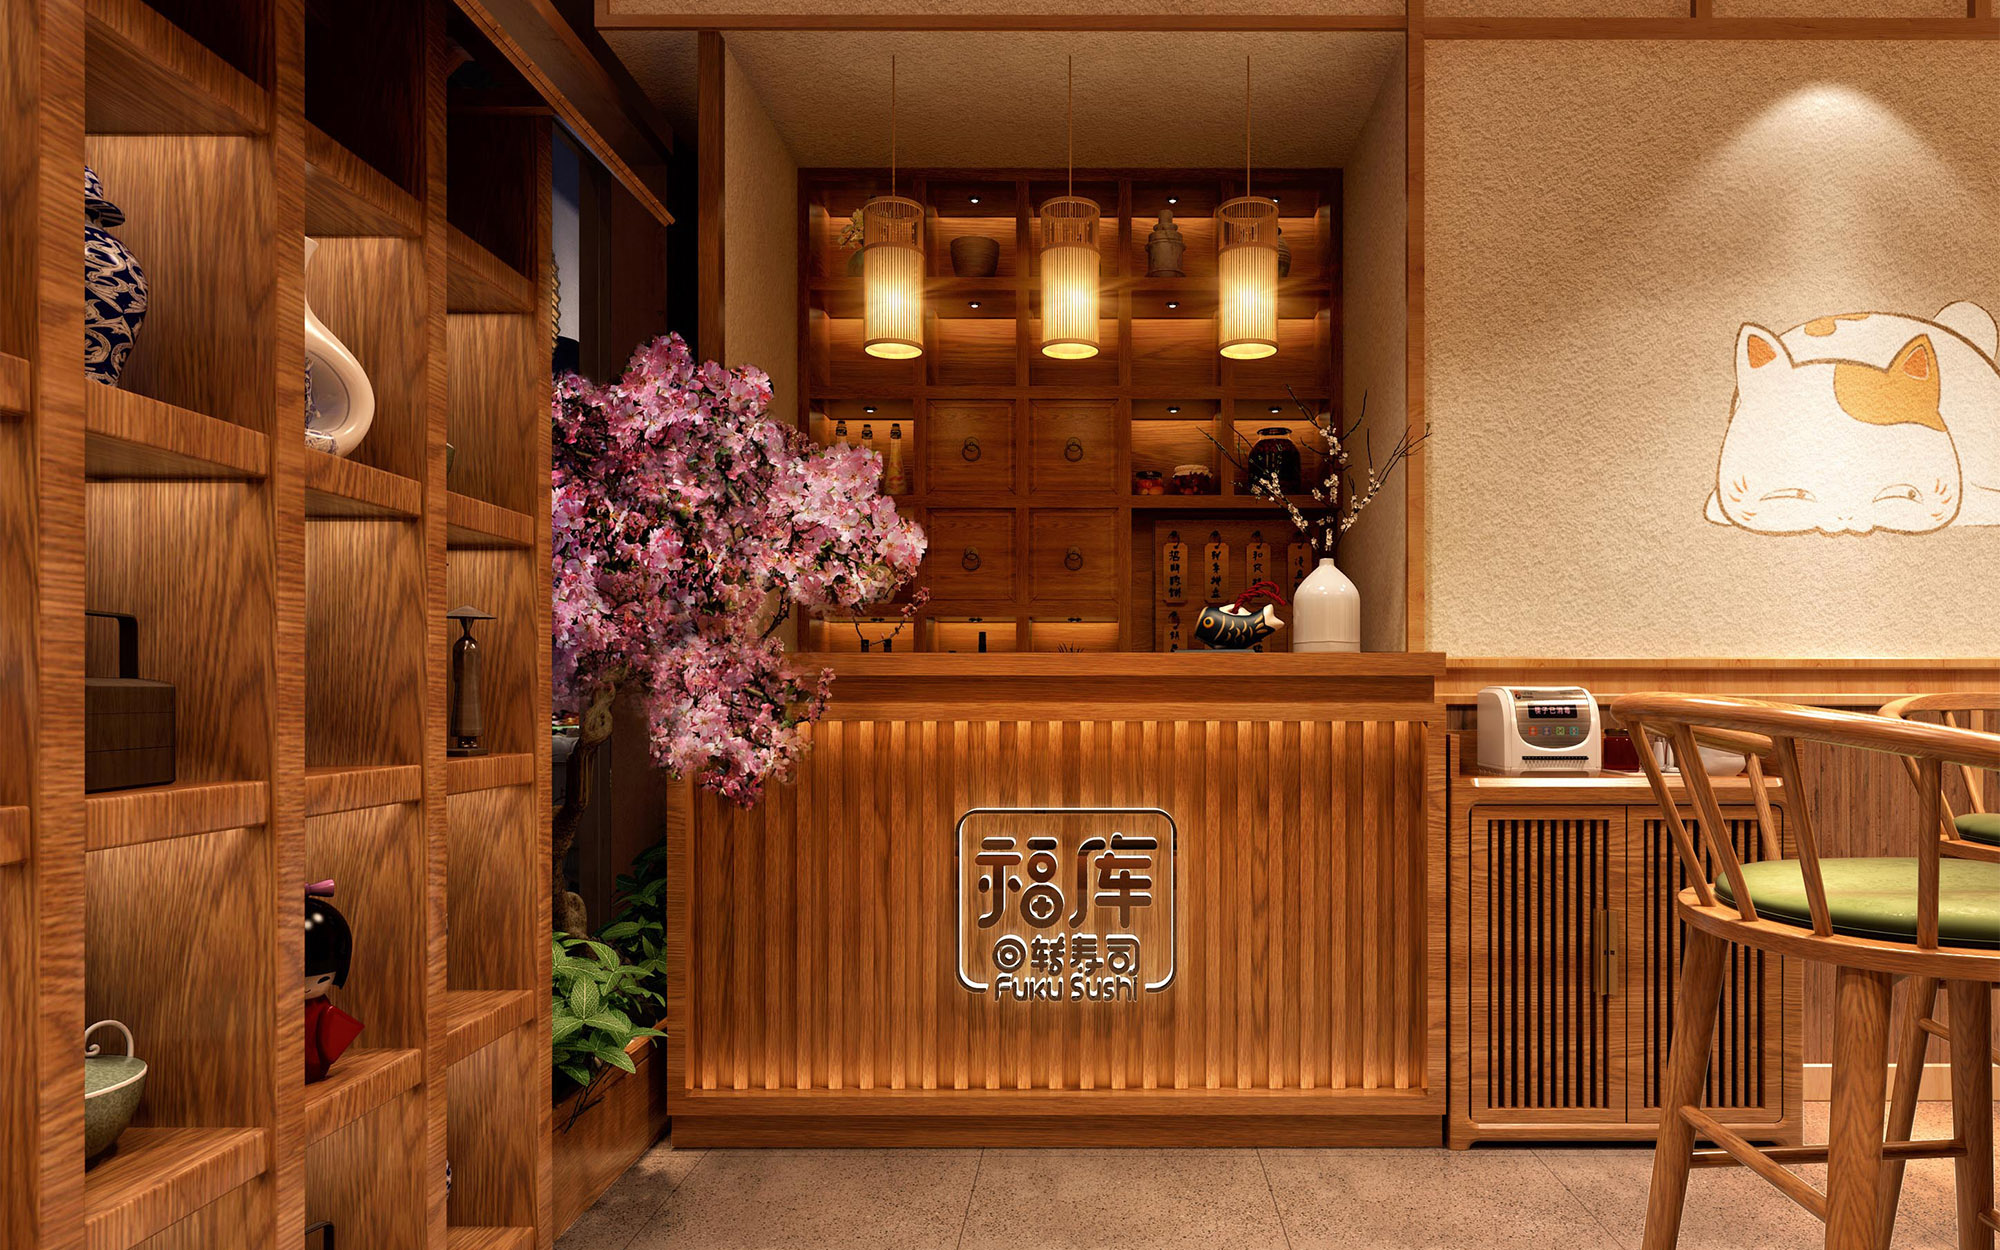 日式料理店设计